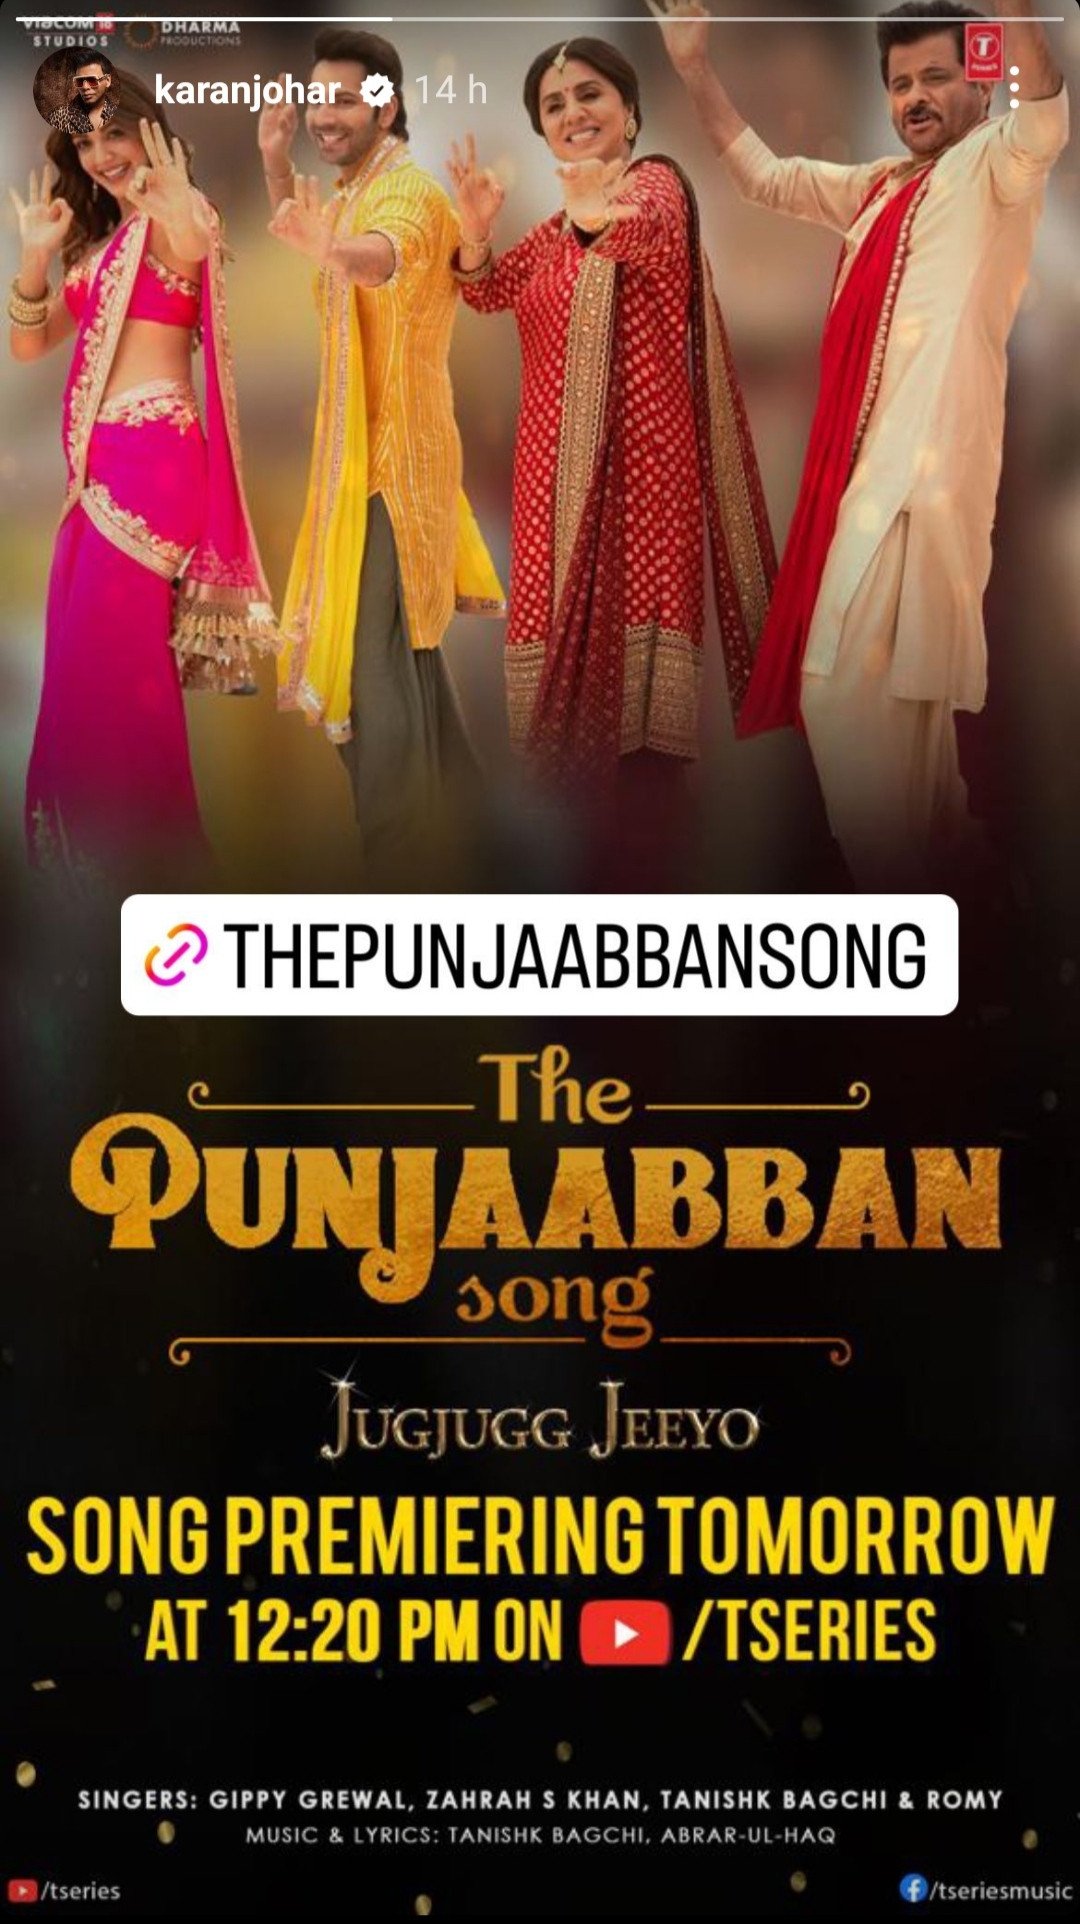 Abrar-ul-Haq gets credits for his song Nach Punjaban in JugJugg Jeeyo